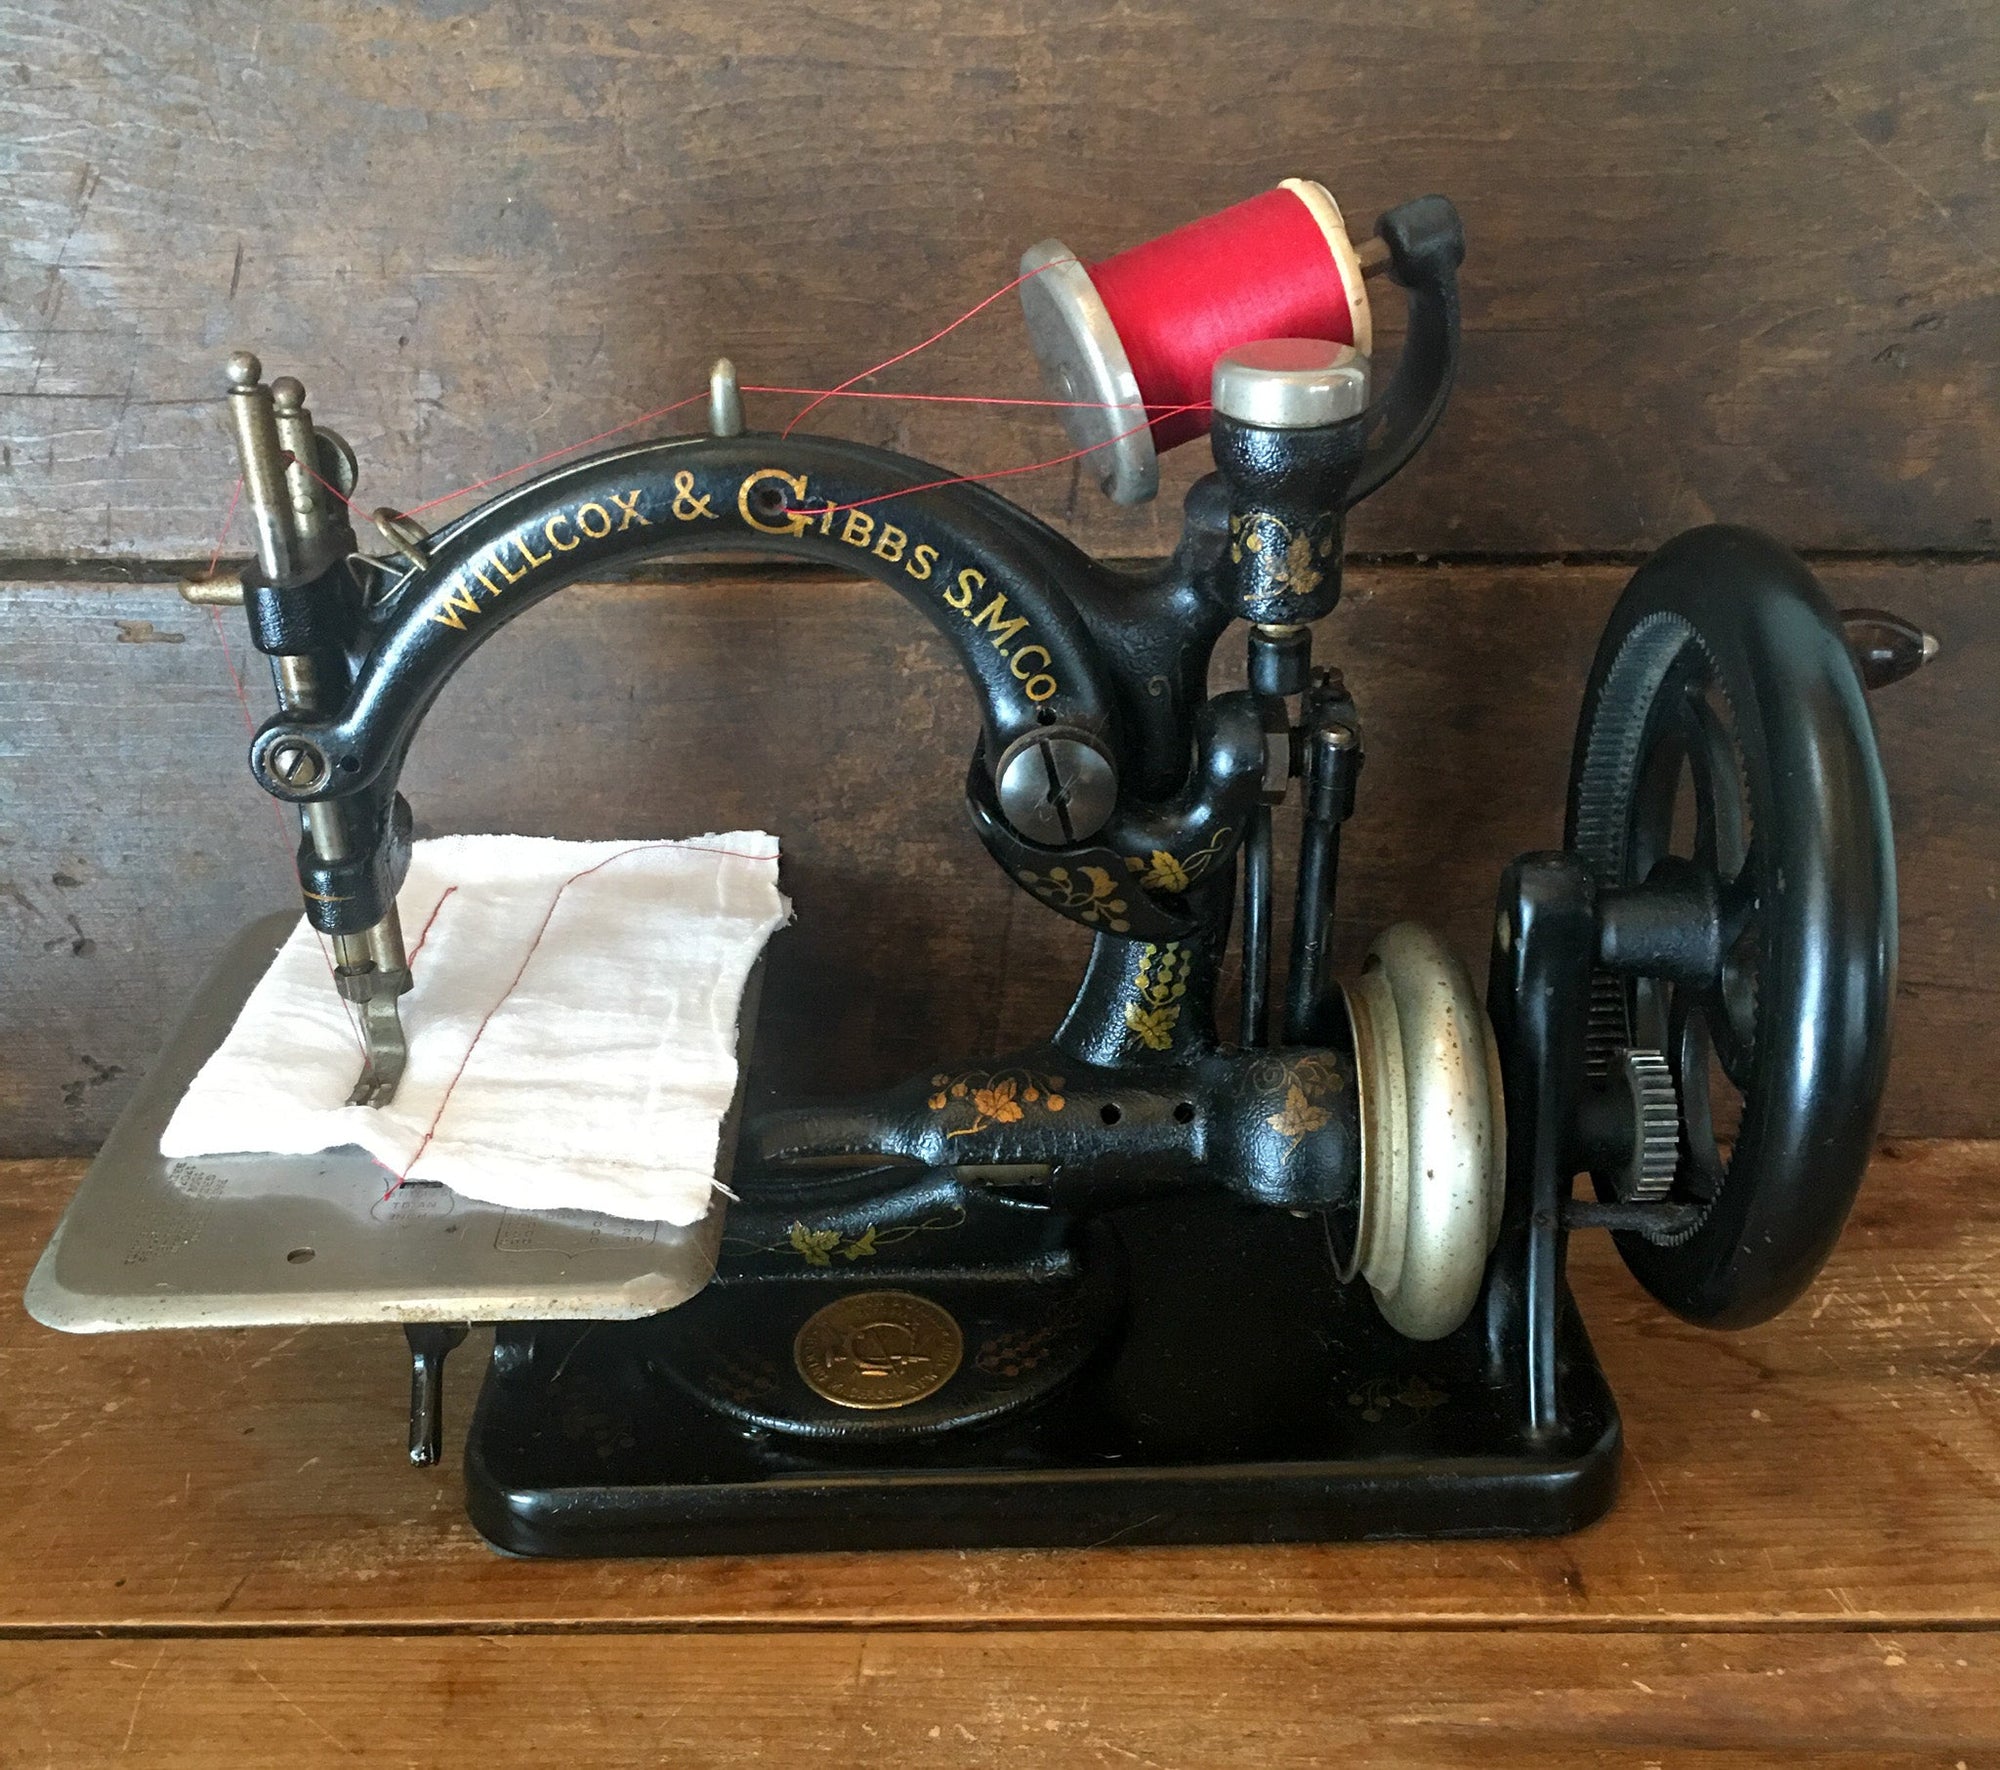 1942 Willcox & Gibbs Sewing Machine